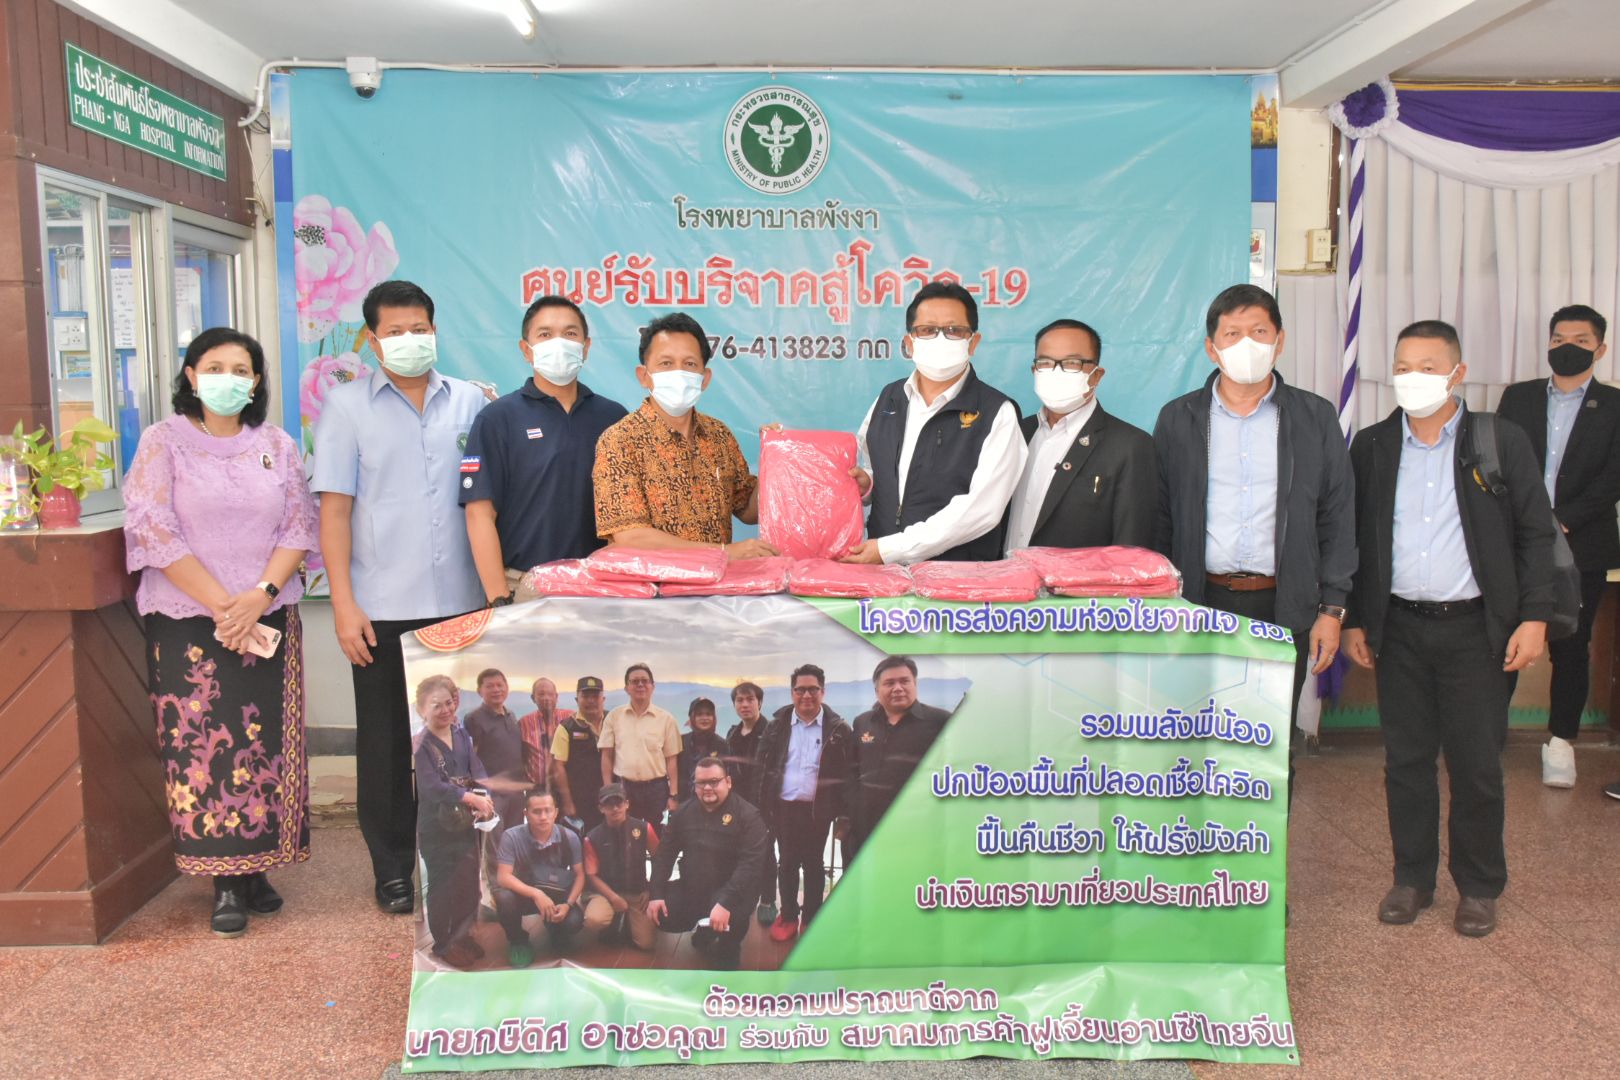 สมาชิกวุฒิสภา มอบชุด PPE สนับสนุนภารกิจโควิด-19 ของโรงพยาบาลพังงา